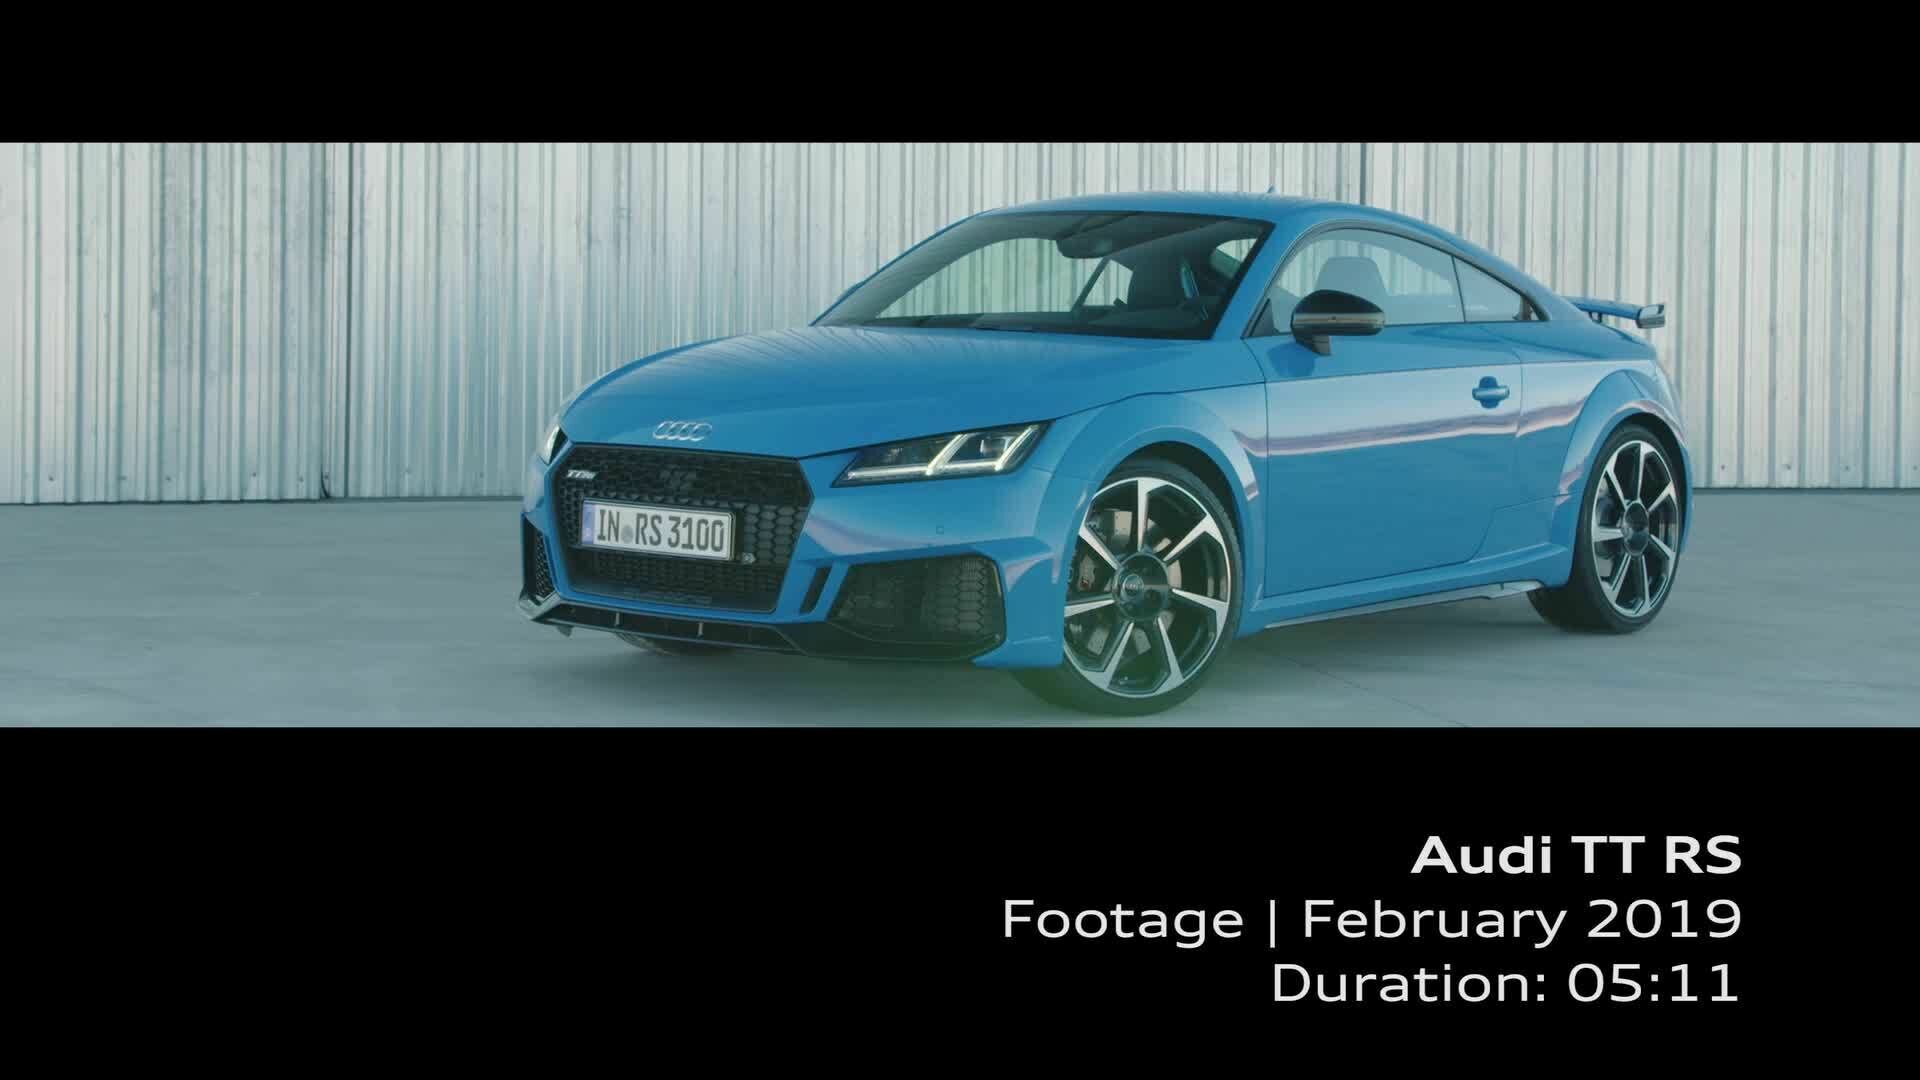 Audi TT RS (Footage)